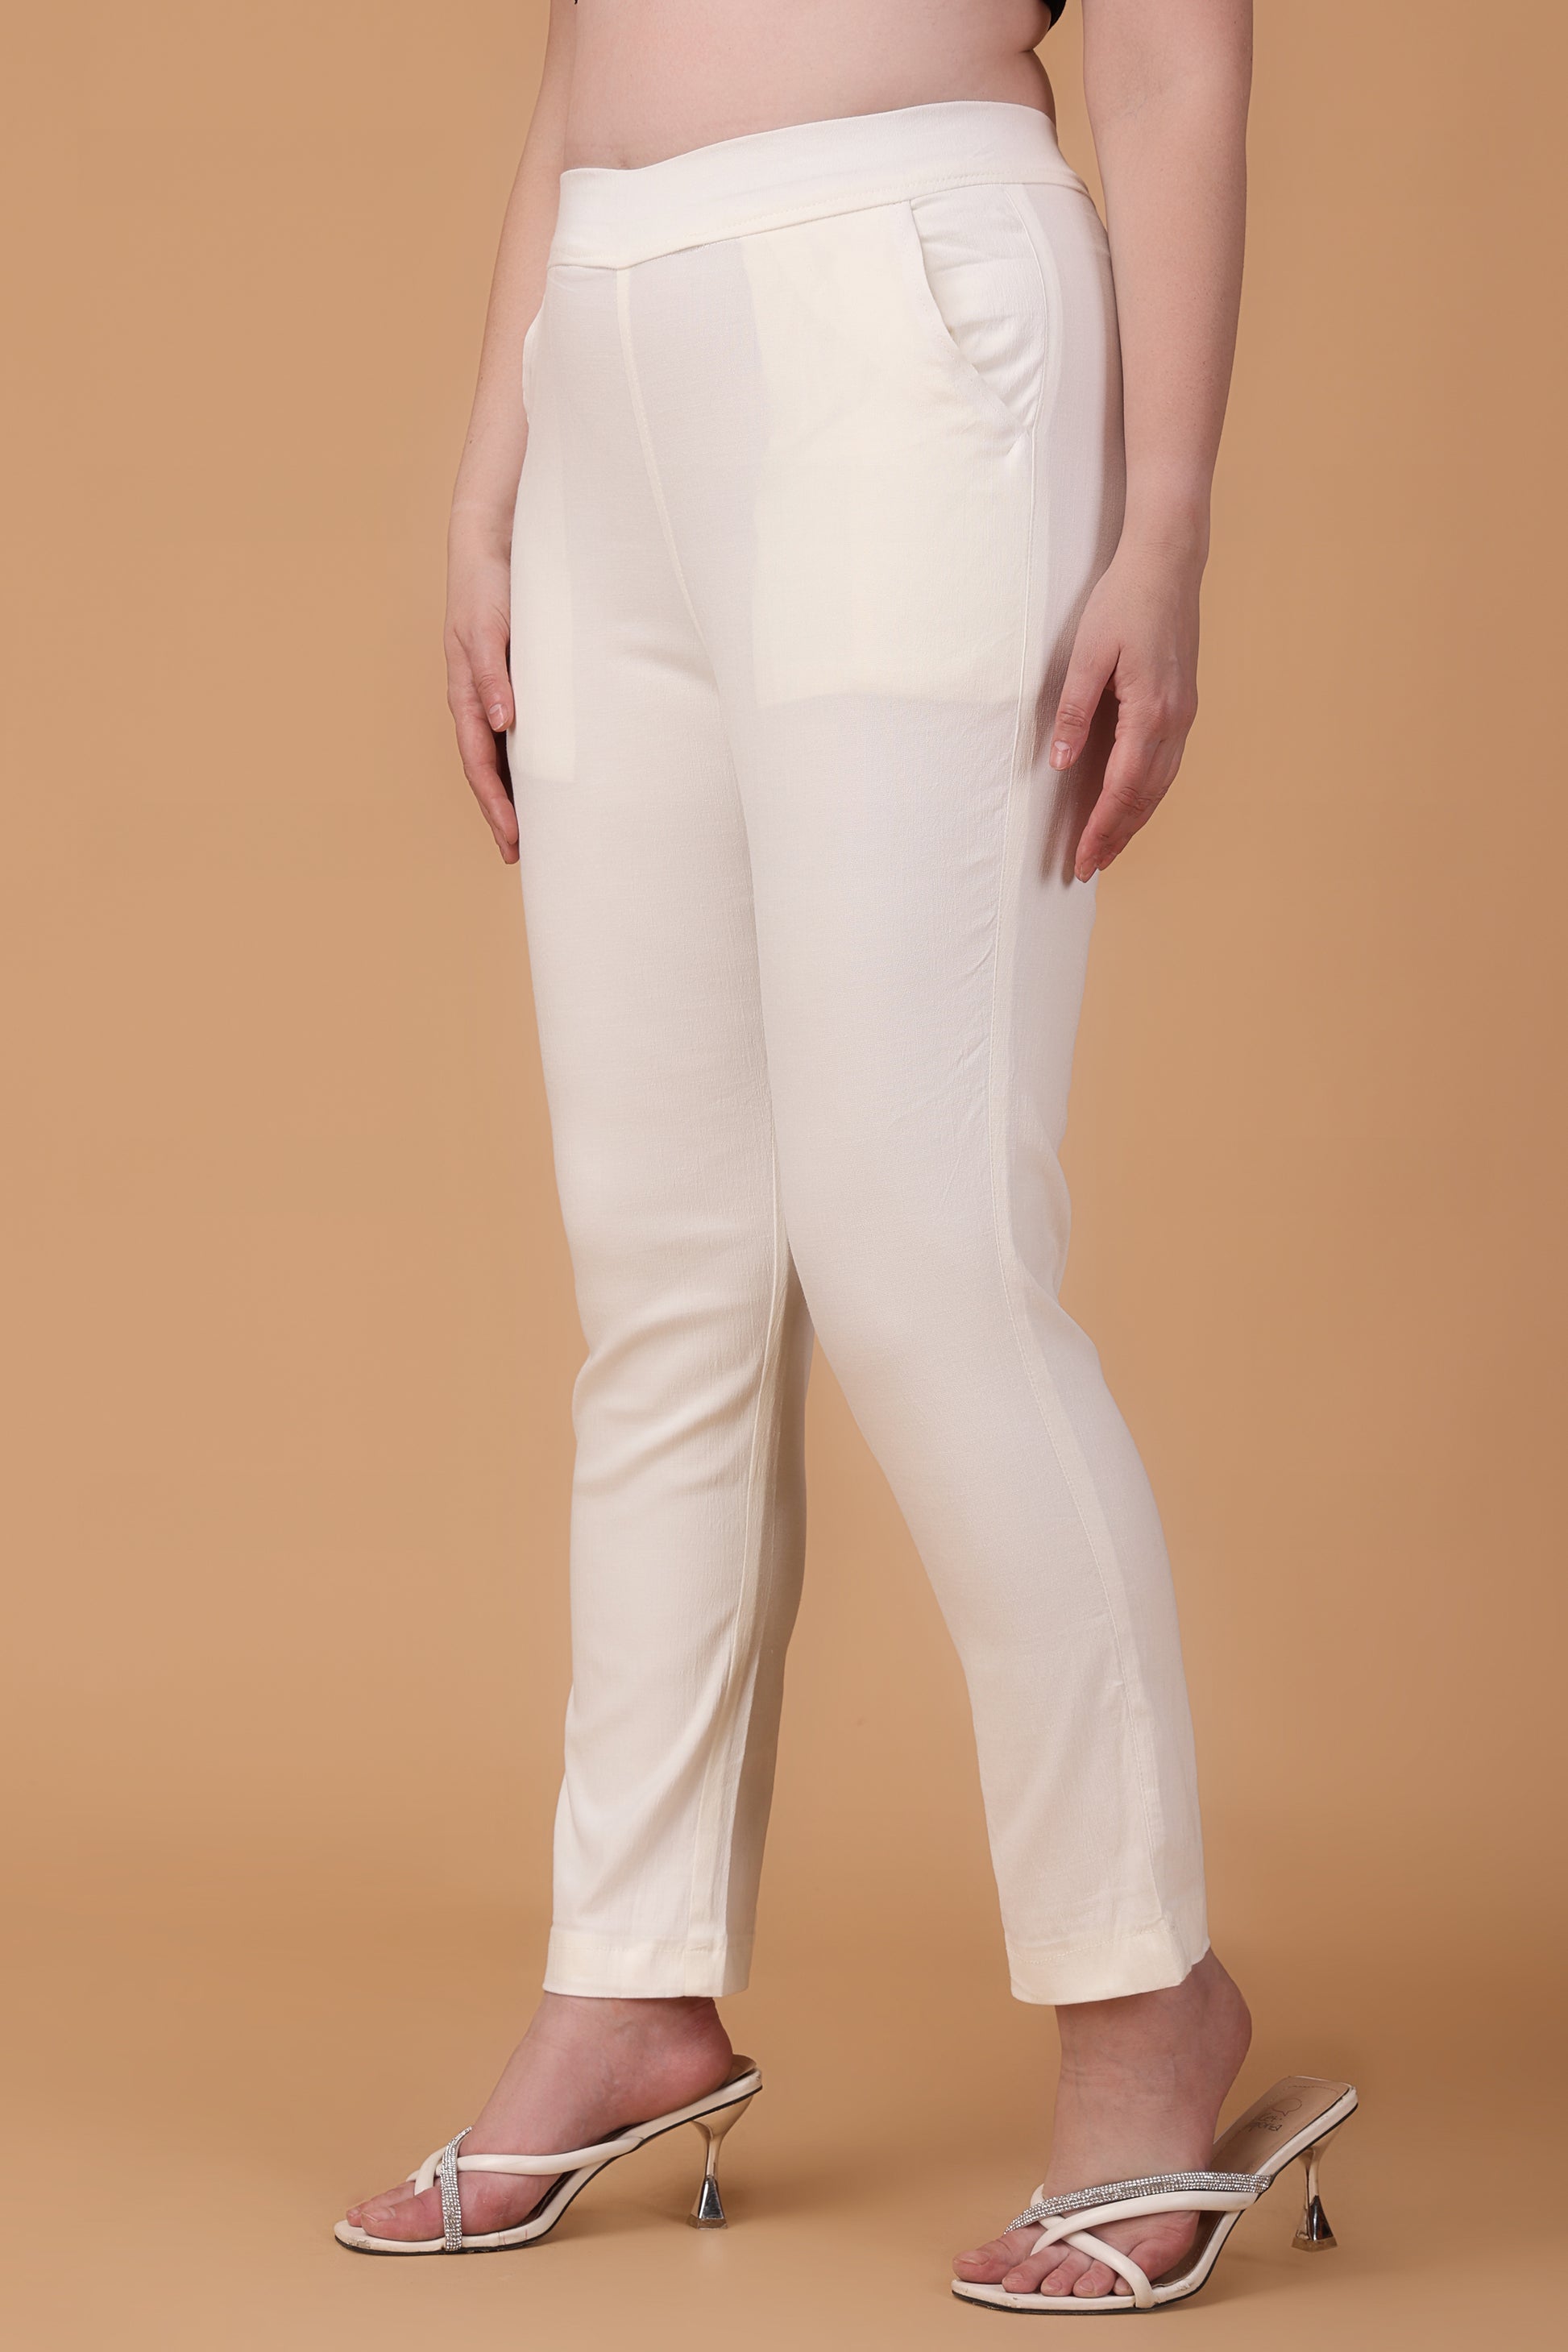 White Lycra Pants